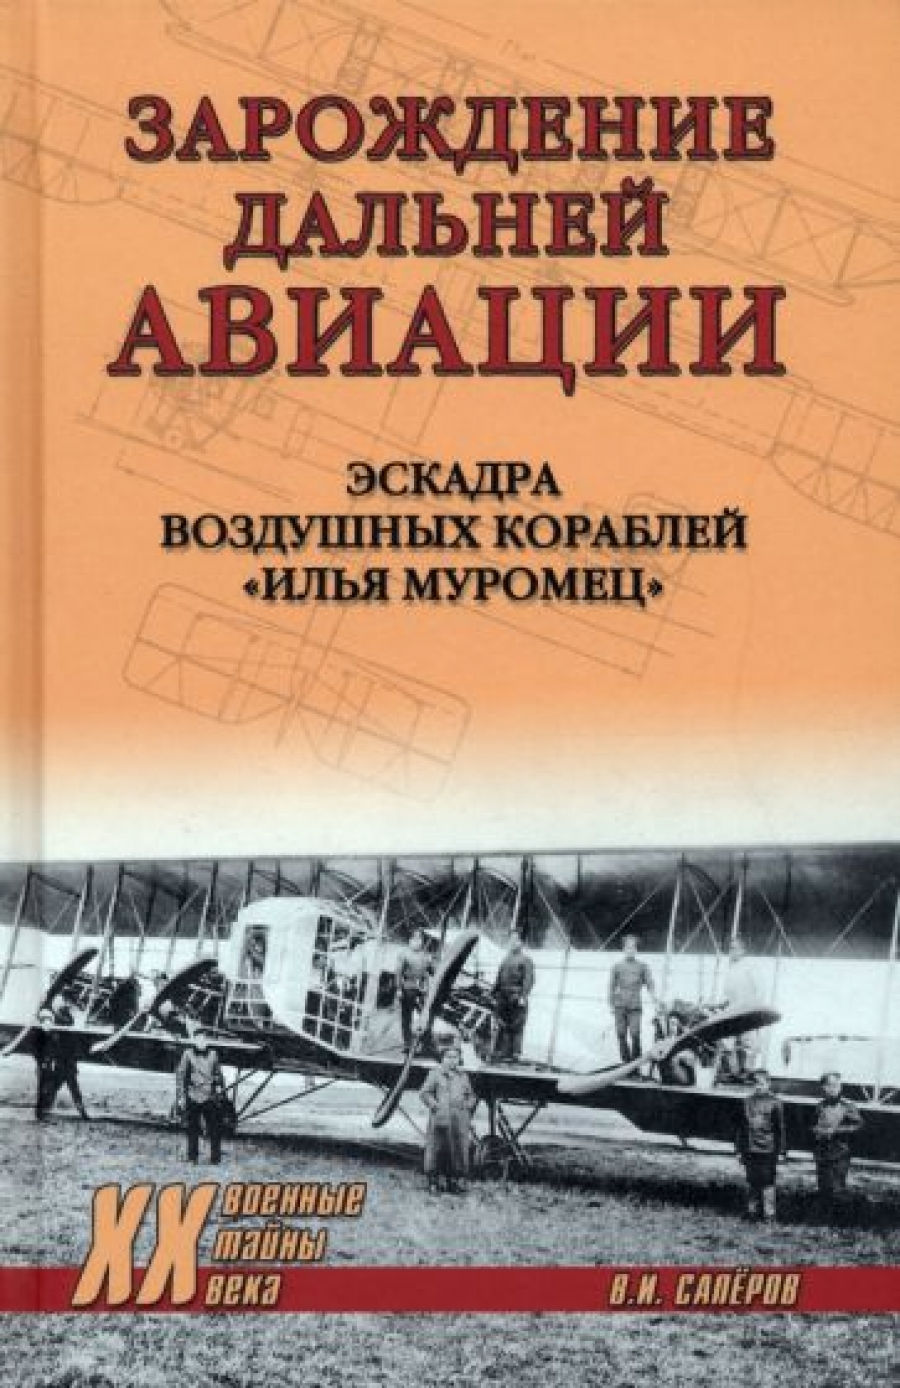 Сапёров В.И. XX NEW Зарождение дальней авиации  (12+) 